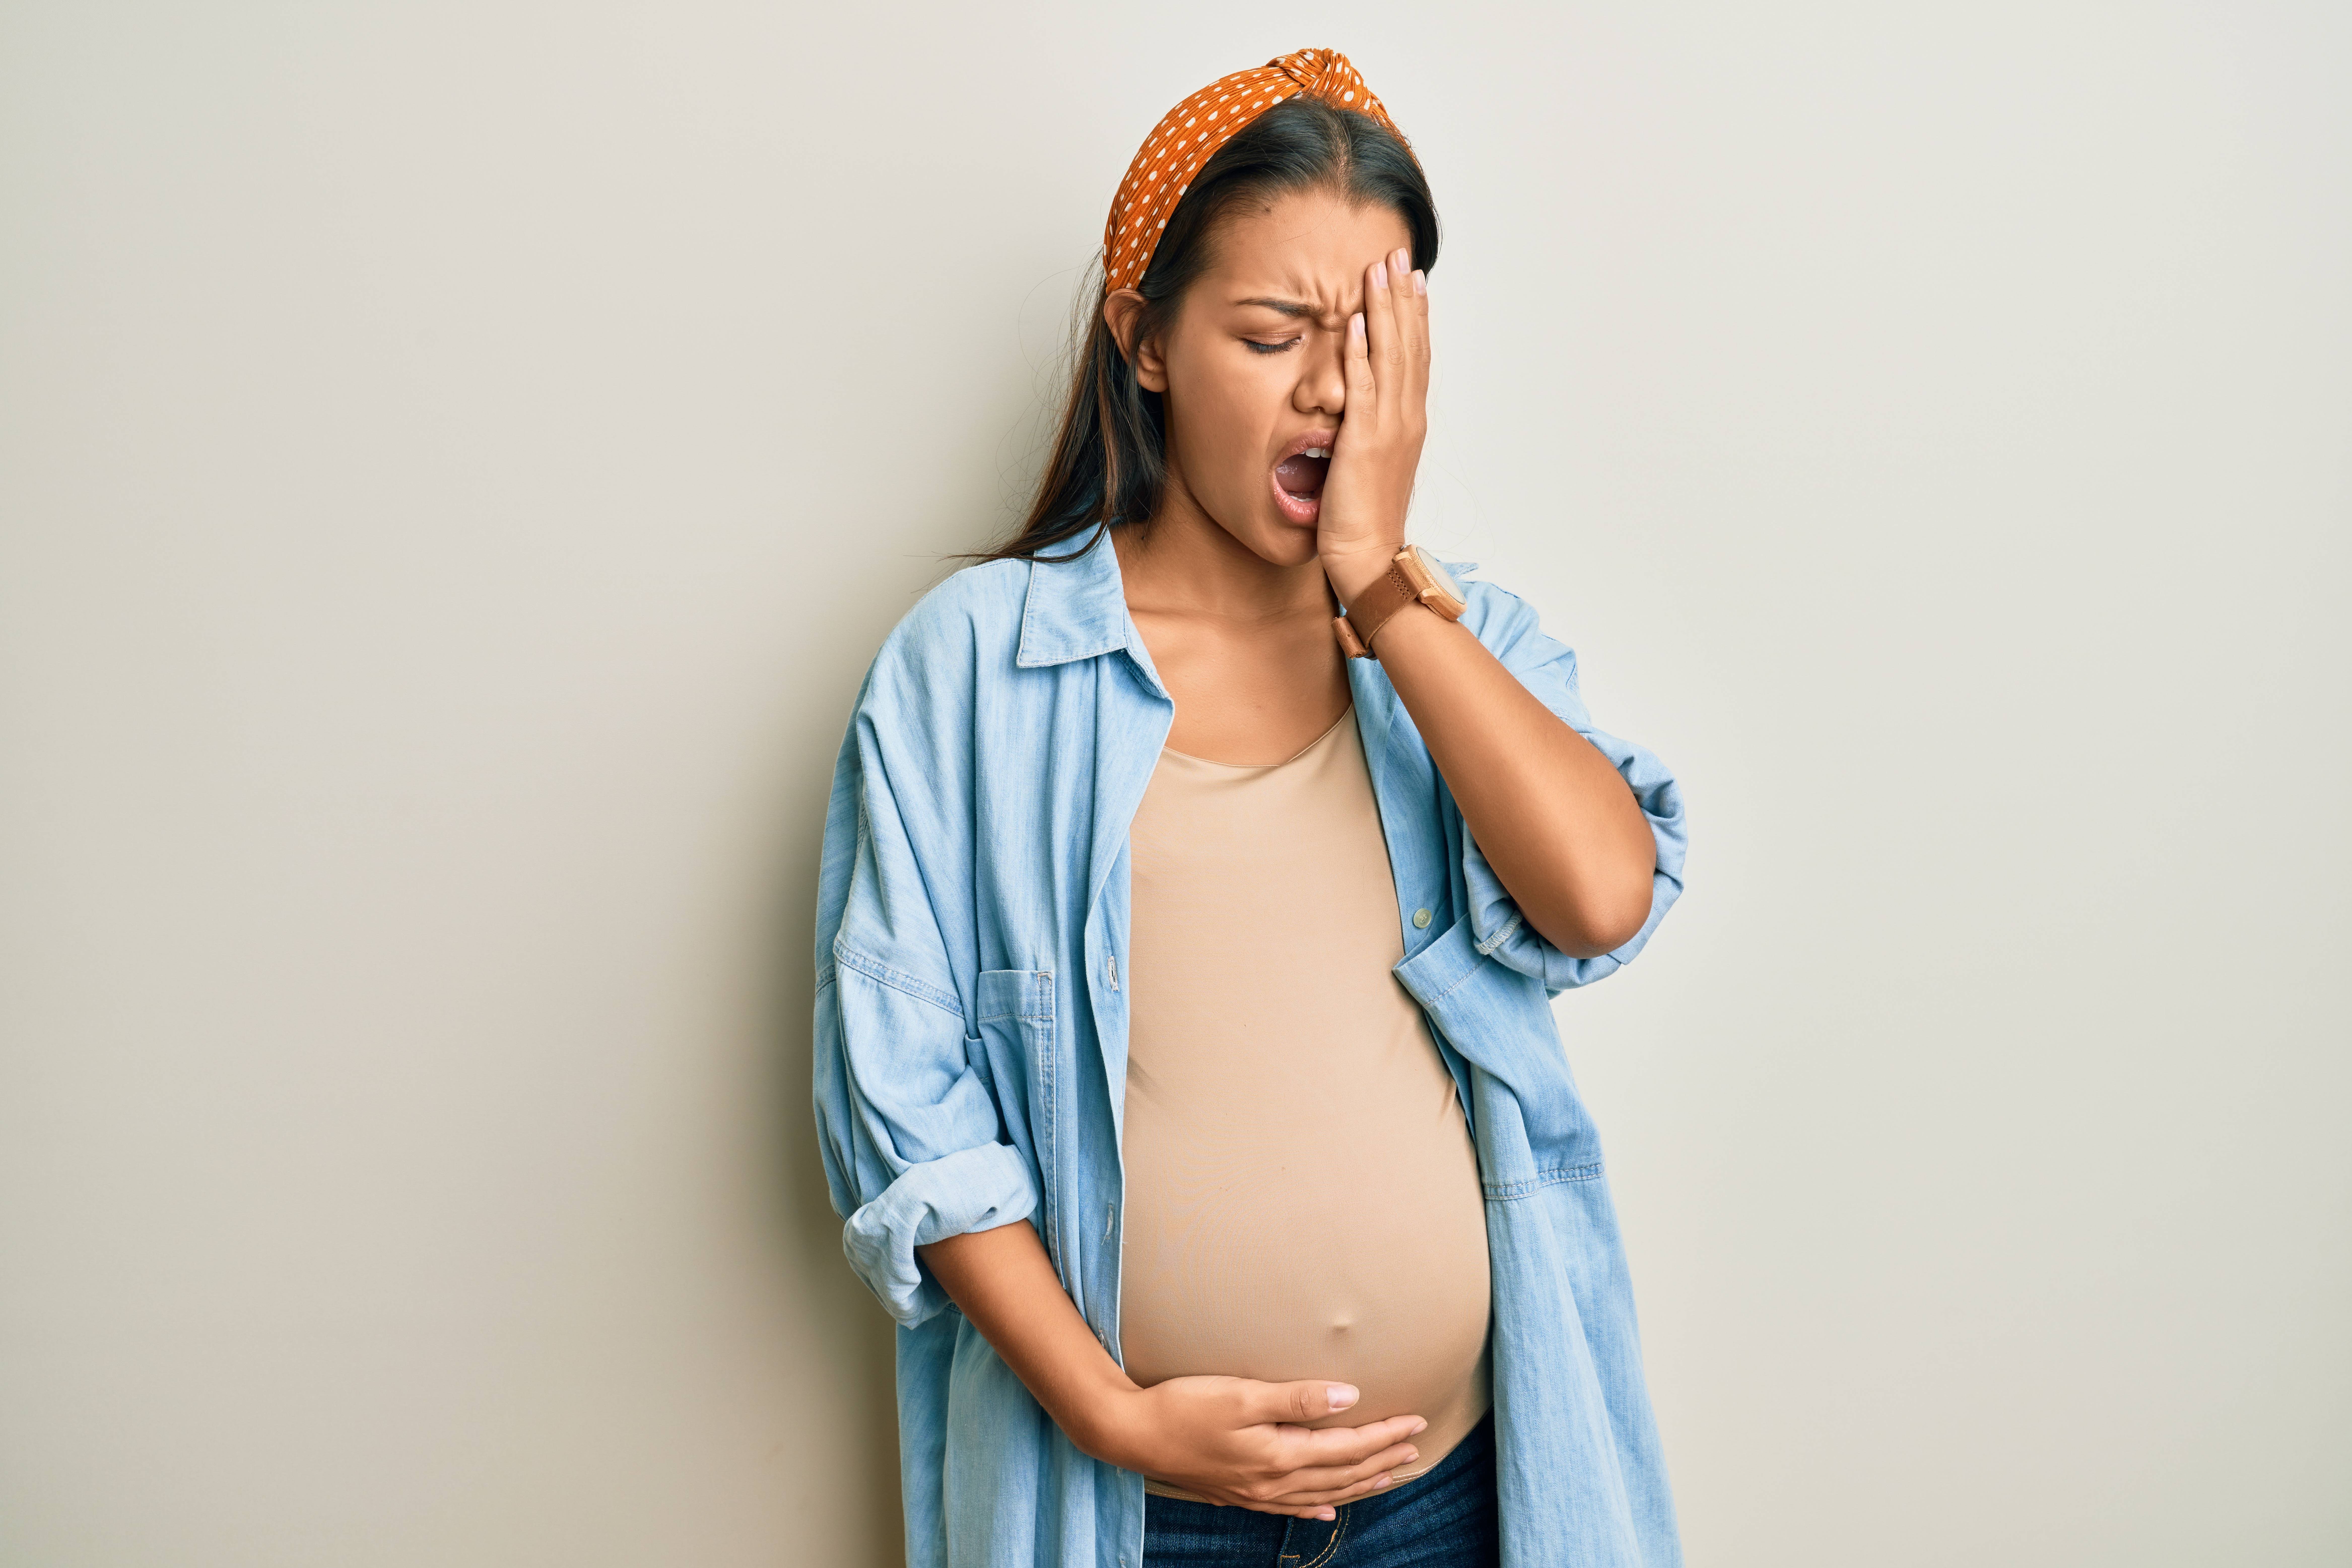 trudnoća po tjednima može biti zgodan način da pratite svoje stanje, poput osjećaja umora, gladi i slično